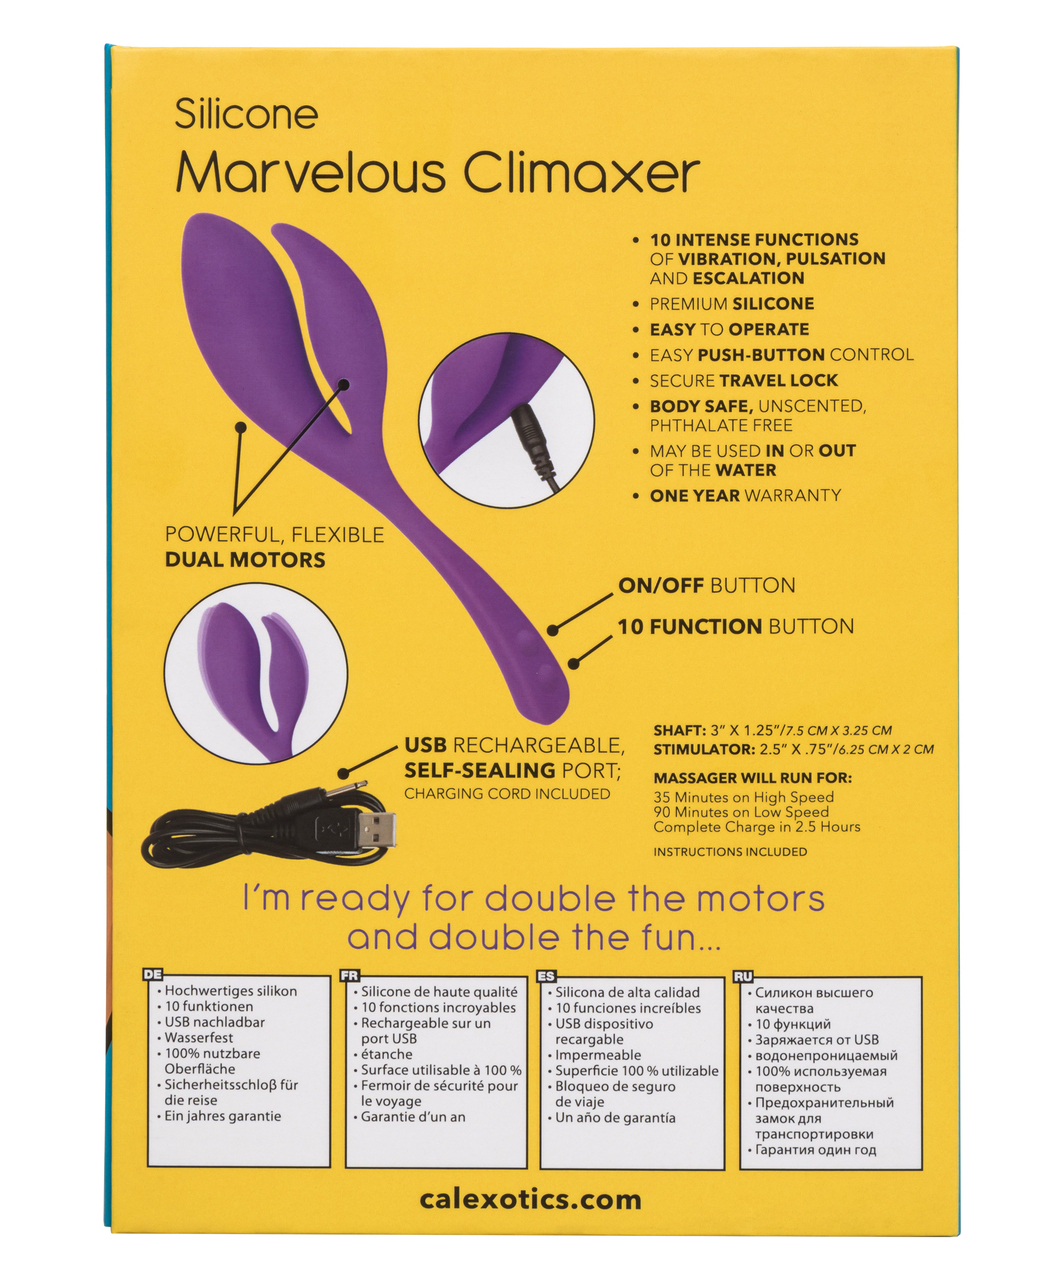 CalExotics Marvelous Climaxer vibrator